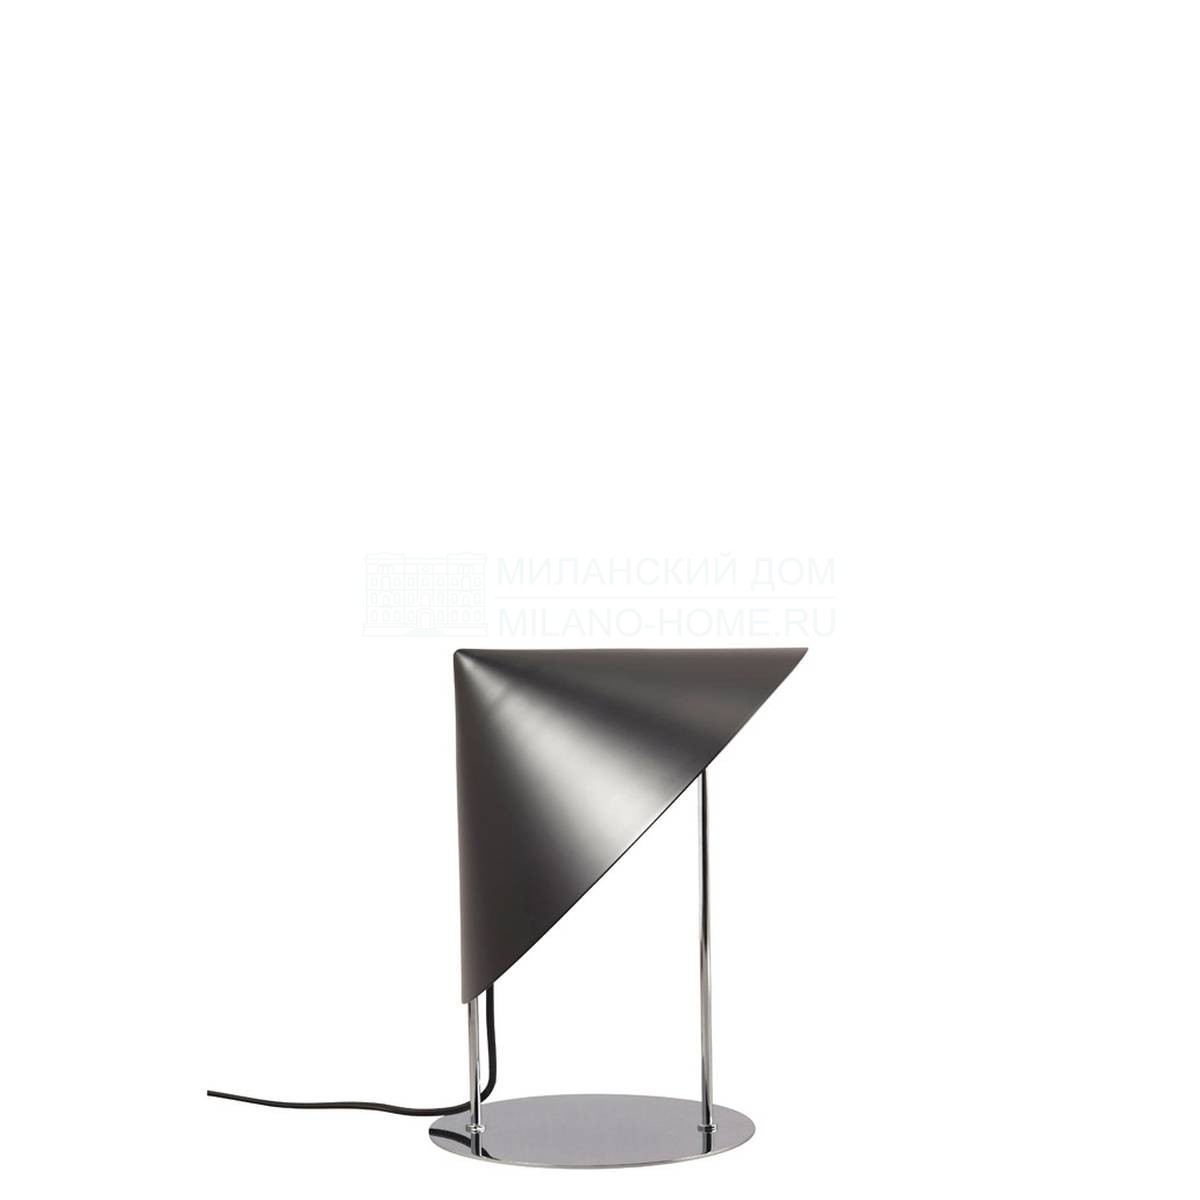 Настольная лампа Lampe geo light cone noir из Франции фабрики FORESTIER